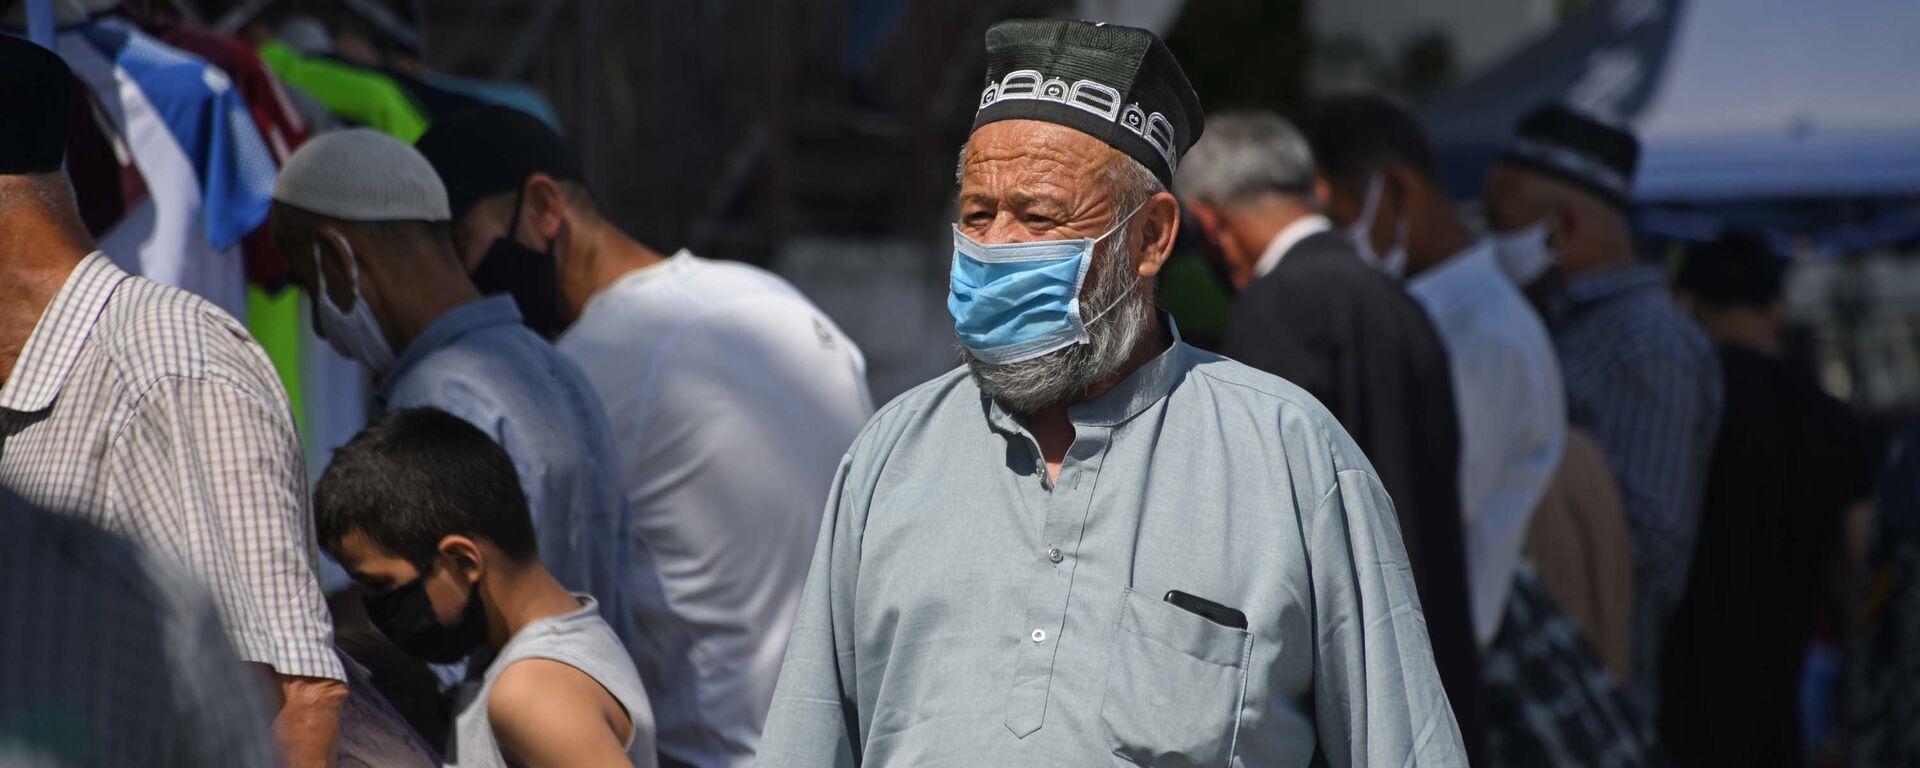 Дедушка в маске в городе Душанбе - Sputnik Таджикистан, 1920, 22.06.2021